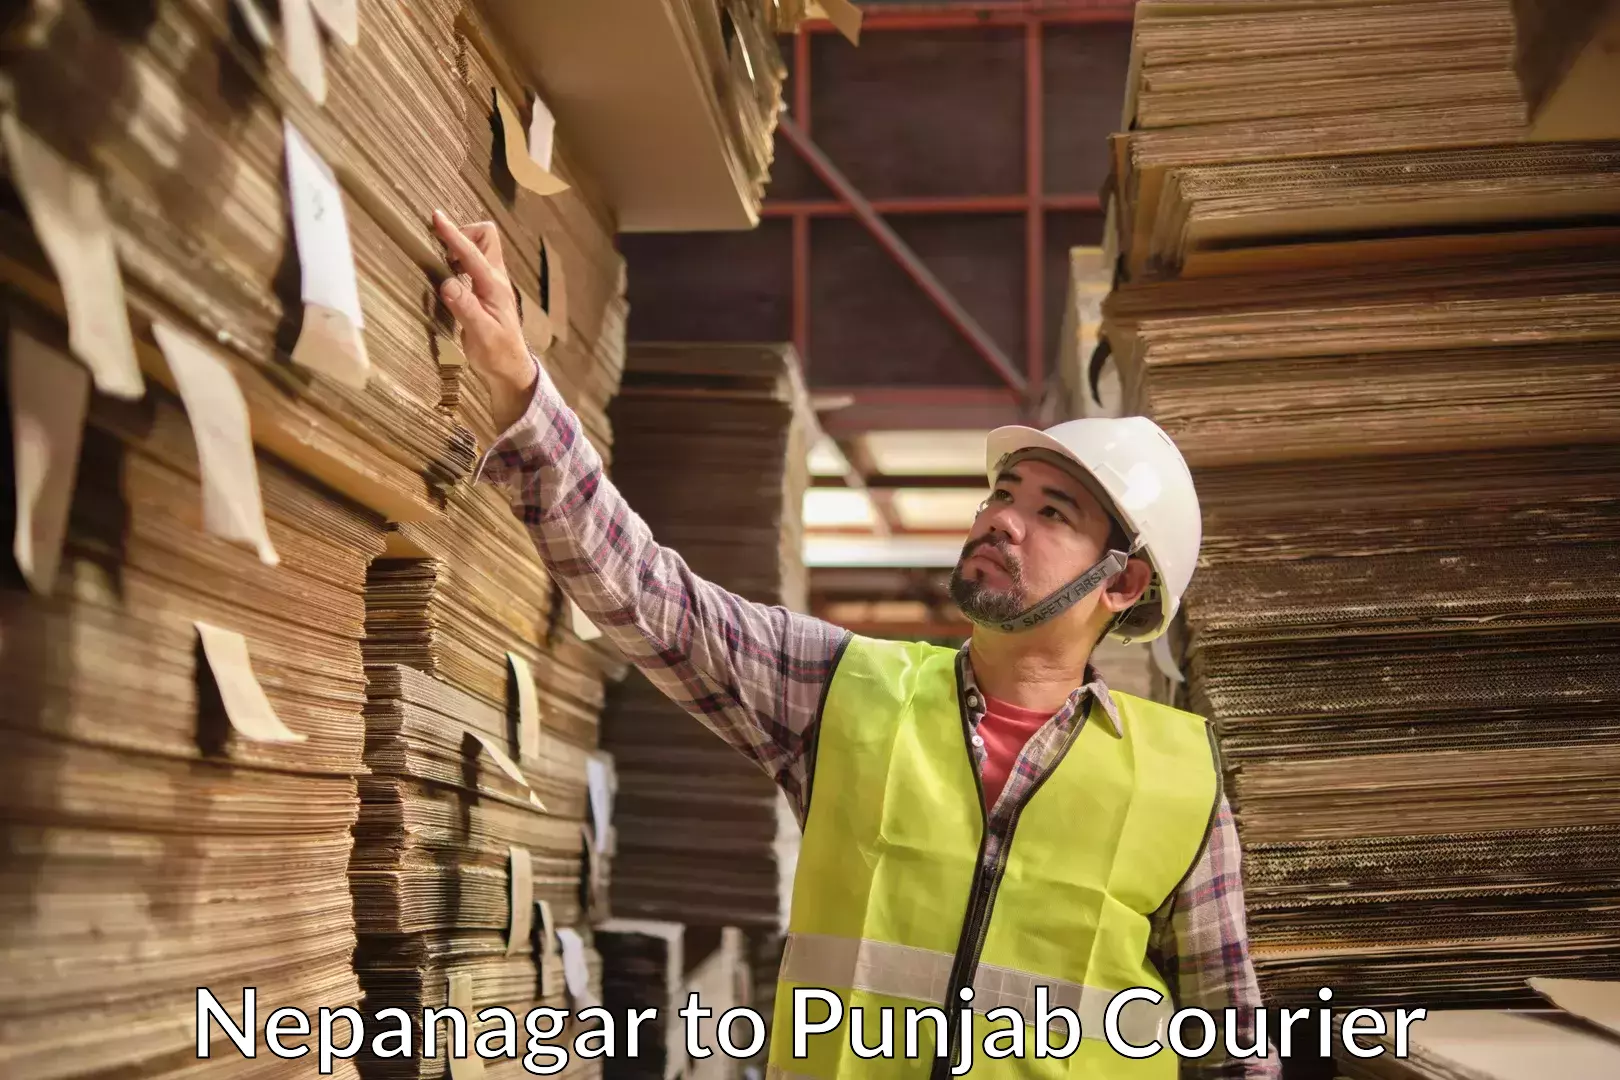 Furniture moving service Nepanagar to Punjab